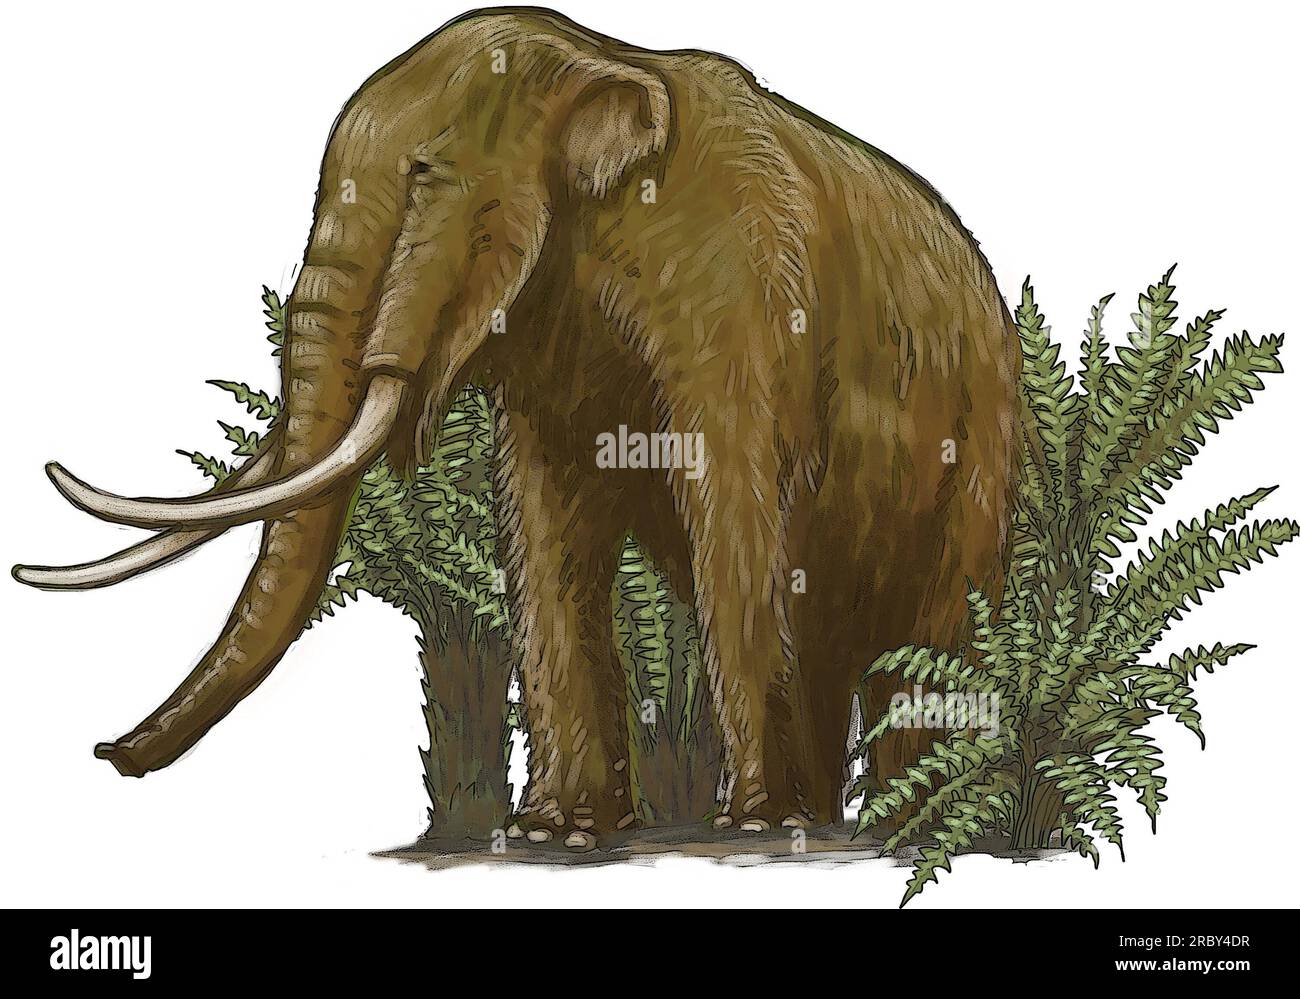 Arte di giovani mammut lanosi (Mammuthus primigenius) specie che vissero durante il Pleistocene fino alla sua estinzione nell'Olocene, antenato elefante. Foto Stock